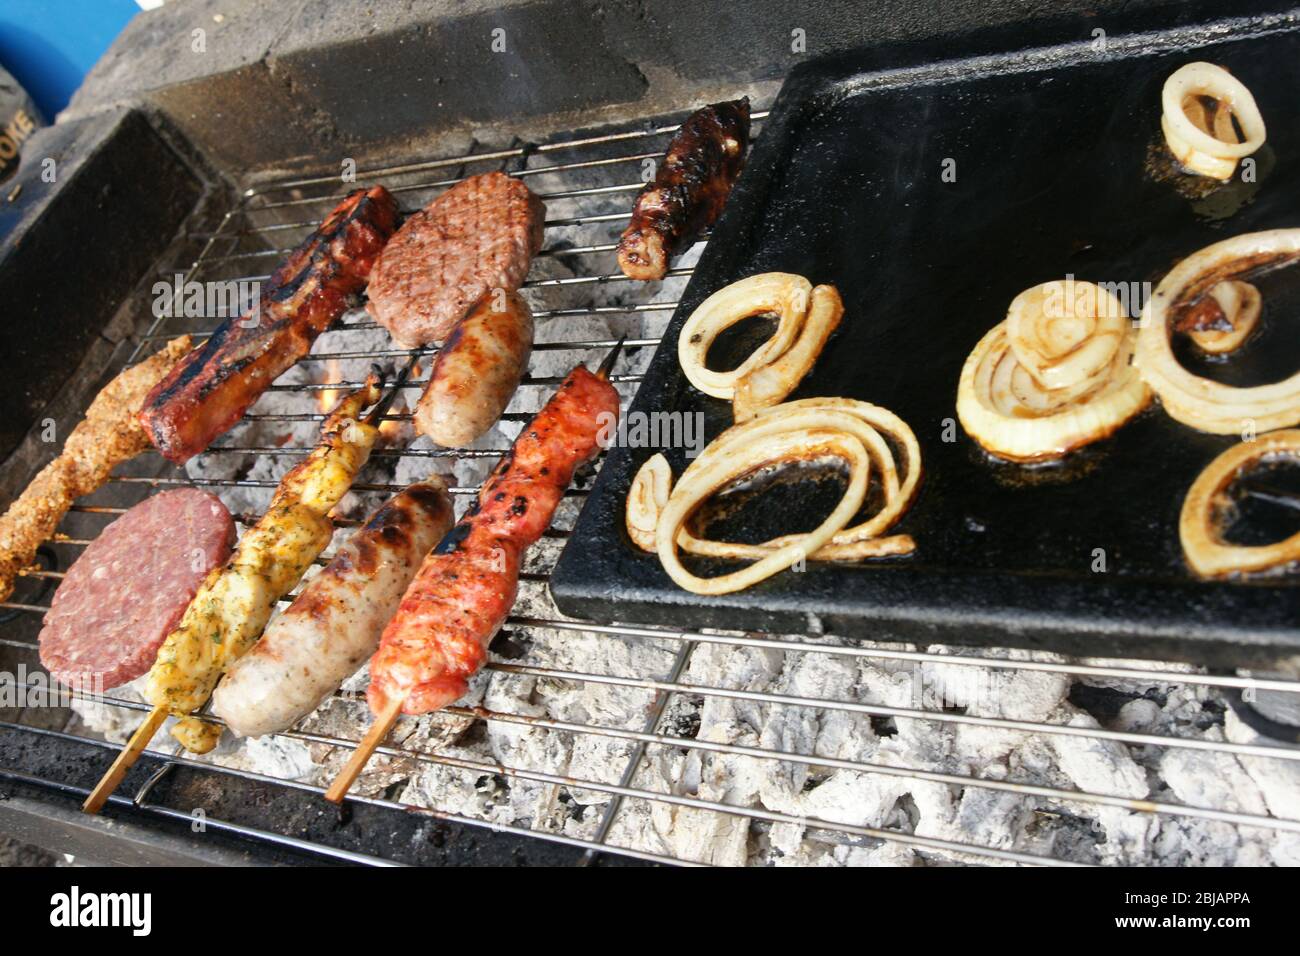 summer barbecue, covid19 lockdown Stock Photo